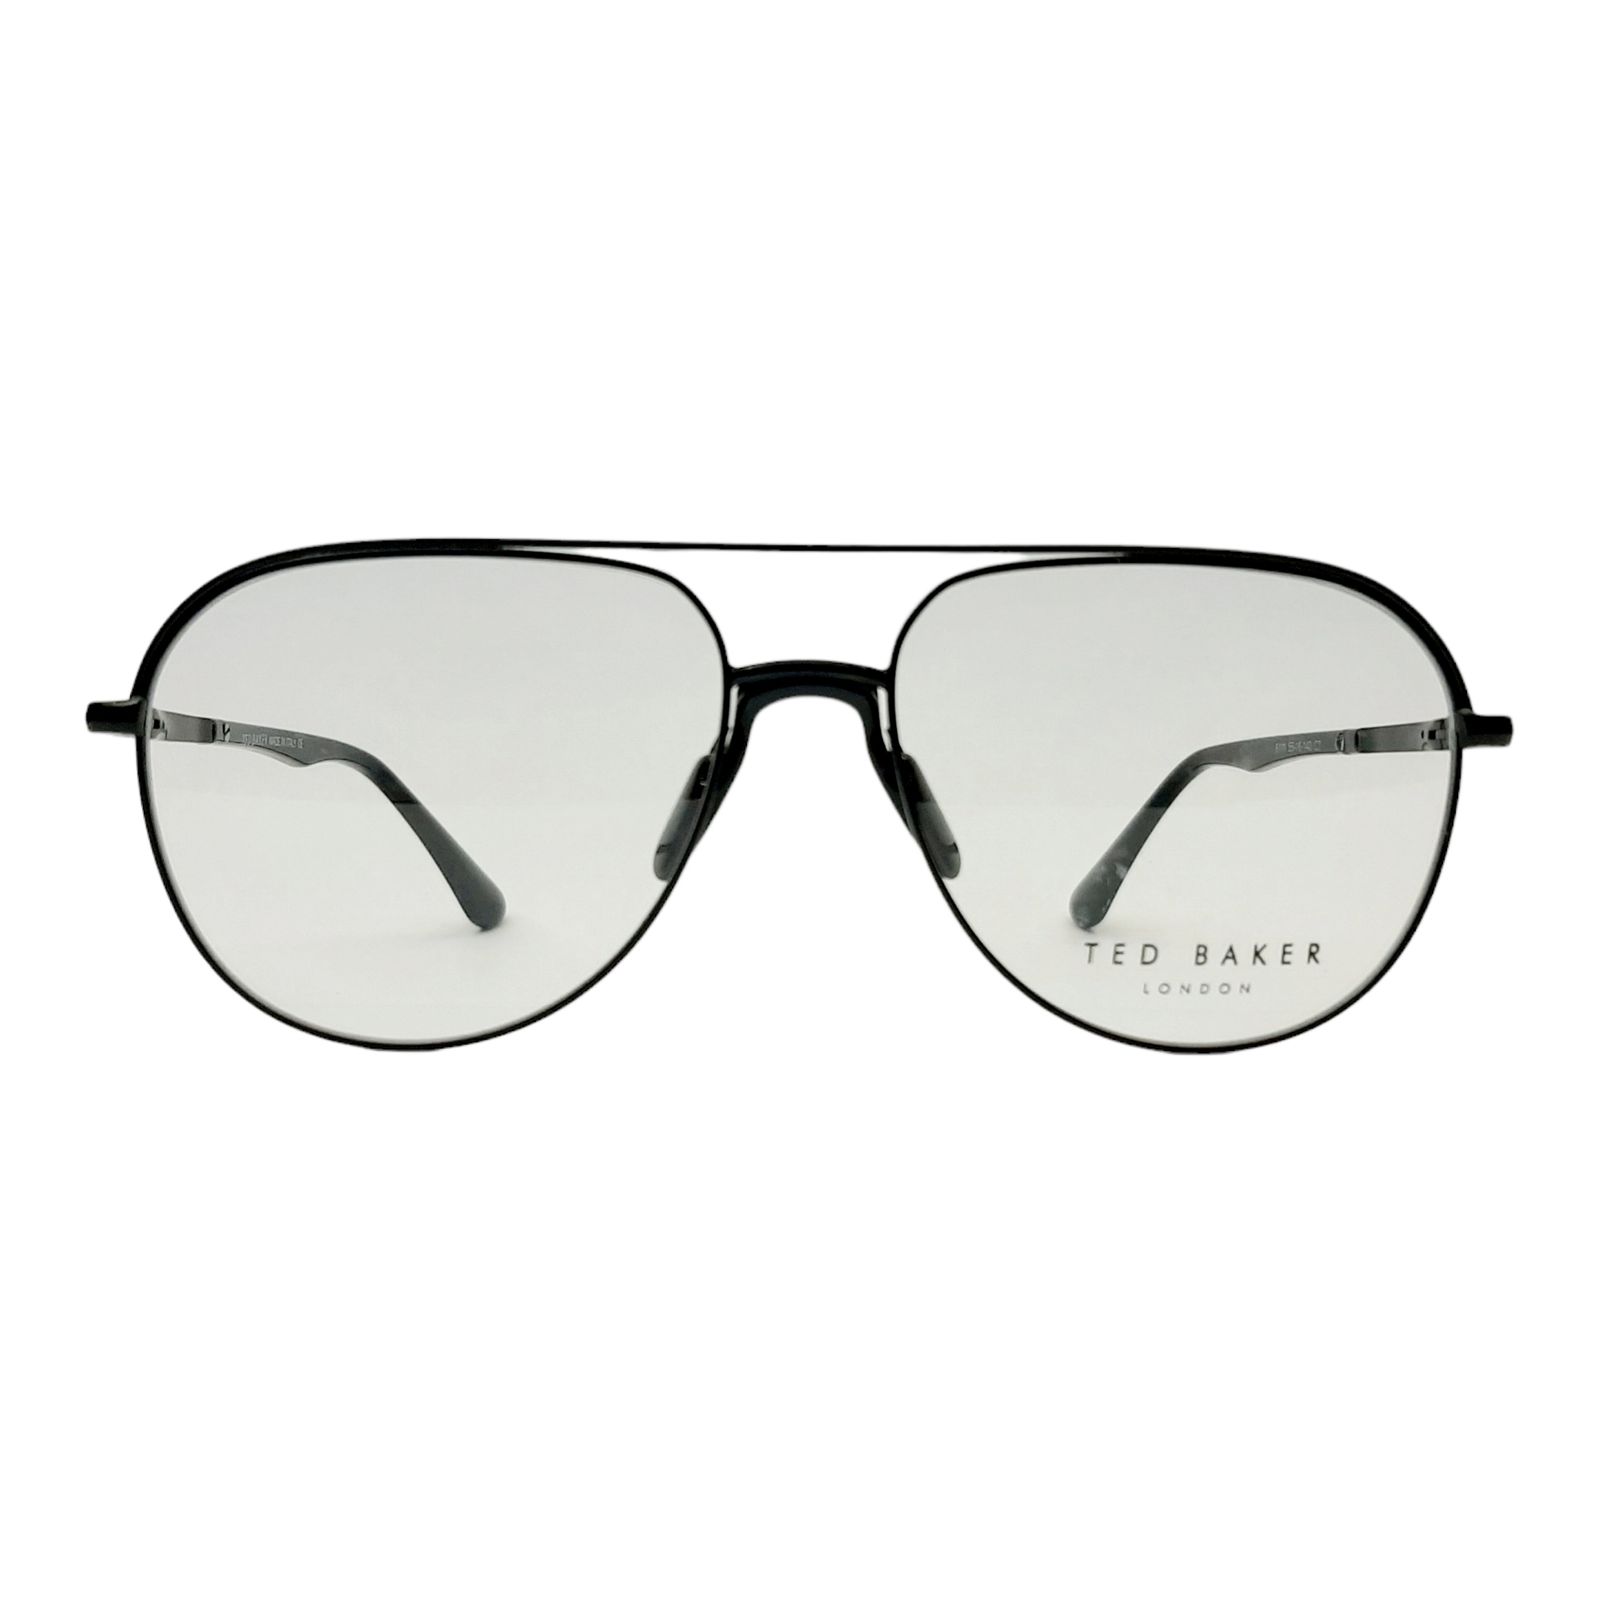 فریم عینک طبی تد بیکر مدل T6111c7